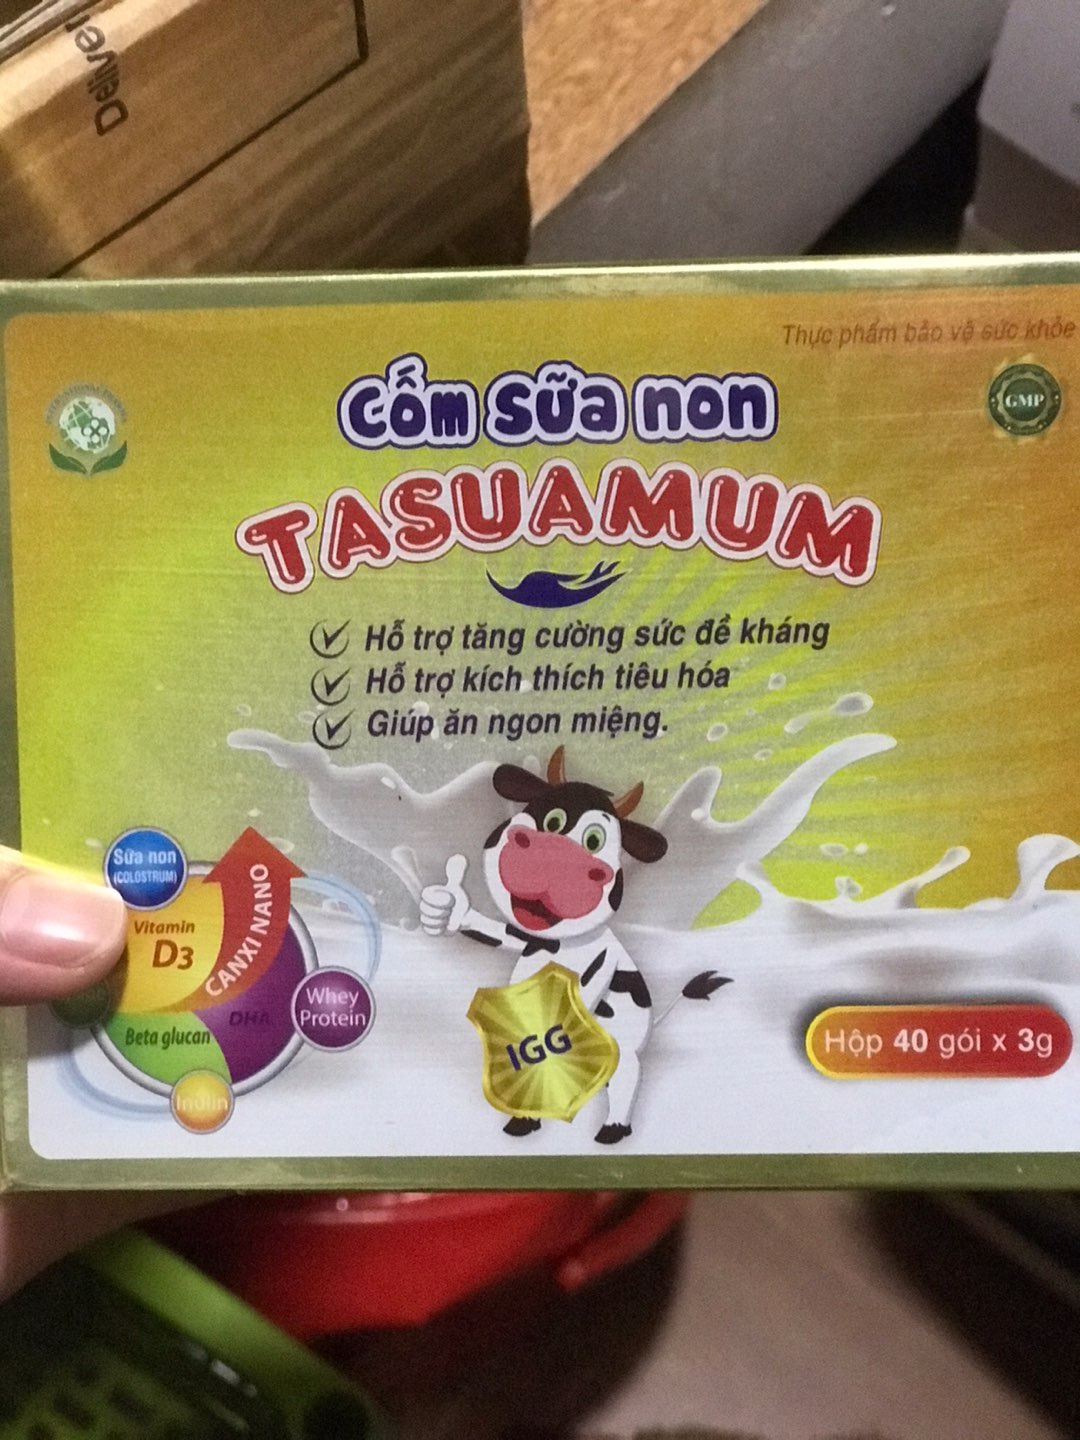 Cốm sữa non cho bé Tasuamum 40 gói hộp